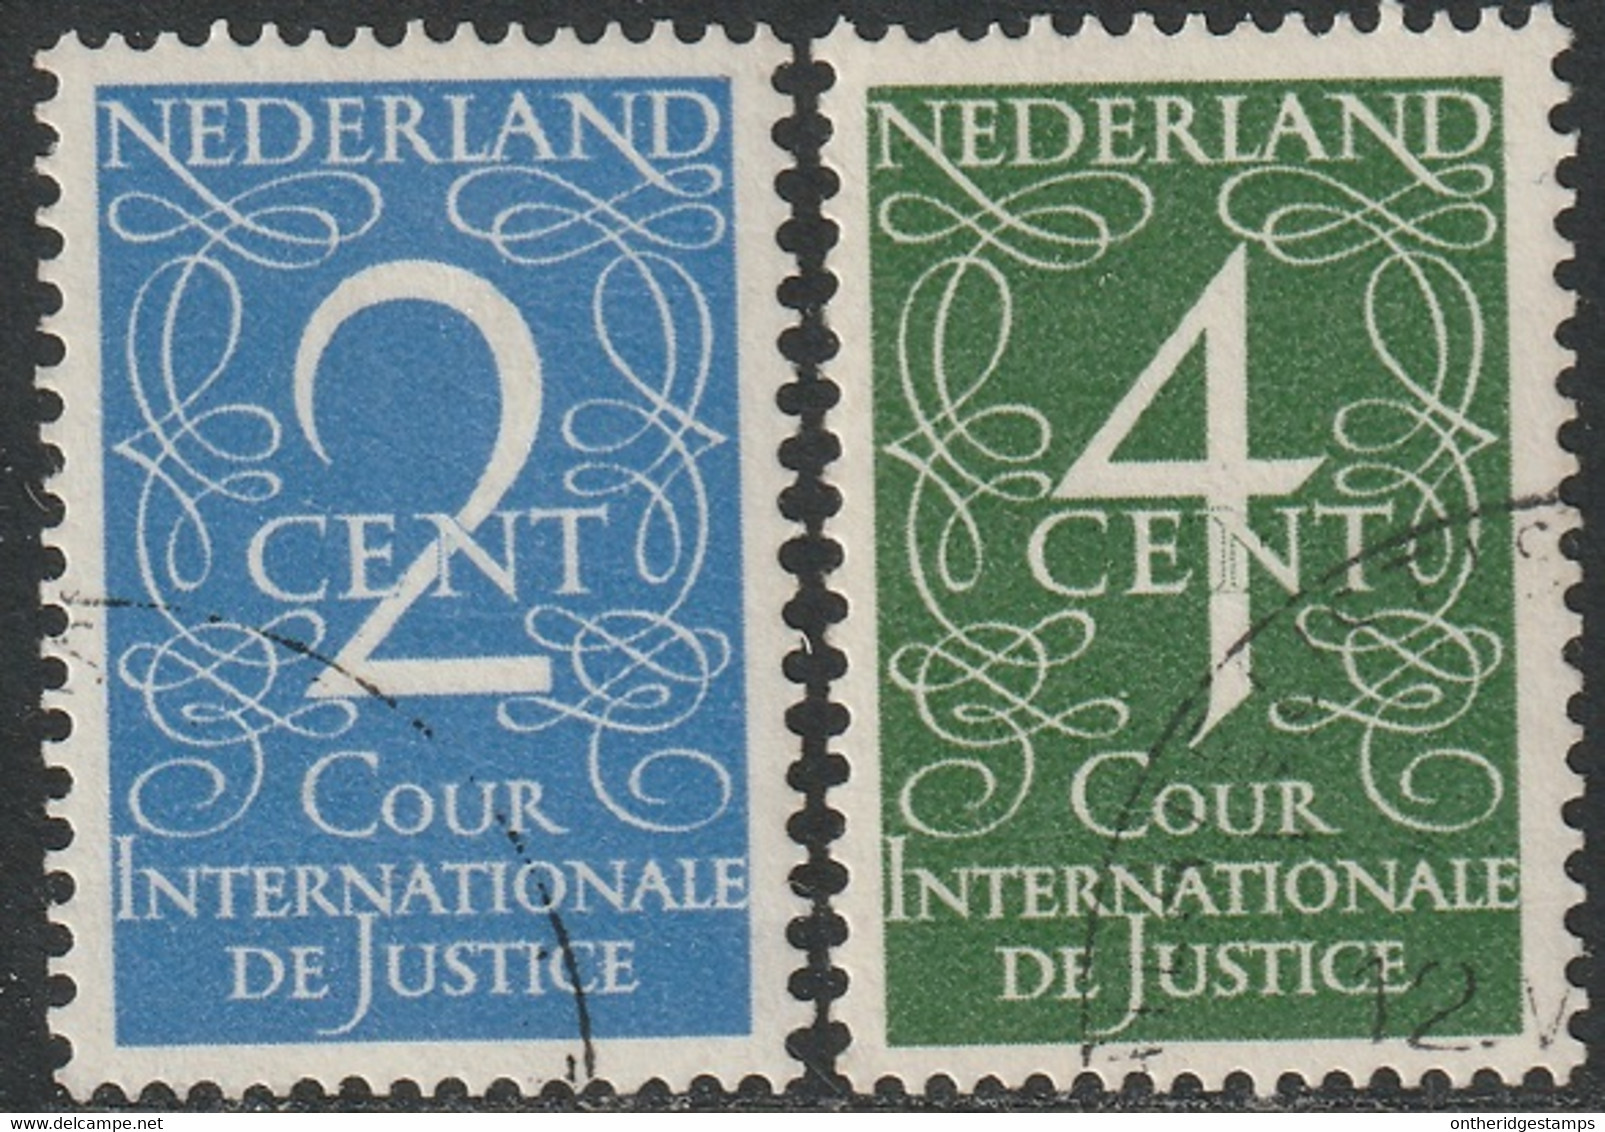 Netherlands 1950 Sc O25-6 NVPH D25-6 Official Set CTO NH - Officials